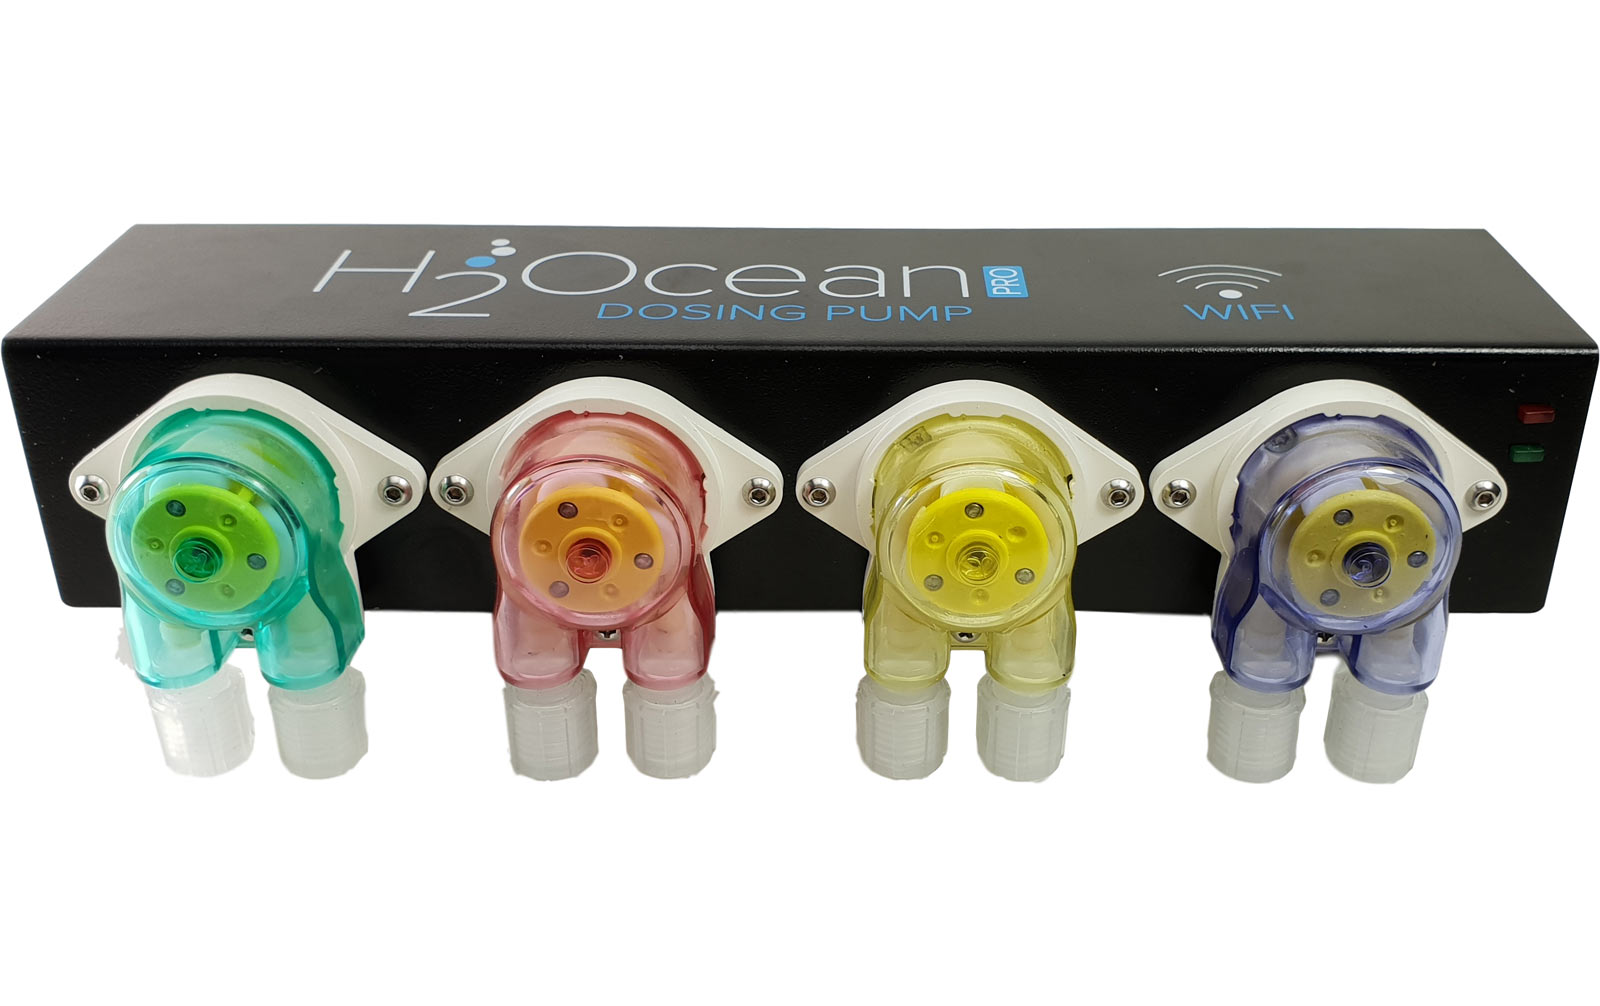 H2Ocean 4 Kanal Dosierpumpe Pro ideal für Süß- und Meerwasser Aquarium, Dosierpumpen, Pumpen, Technik, Mehr